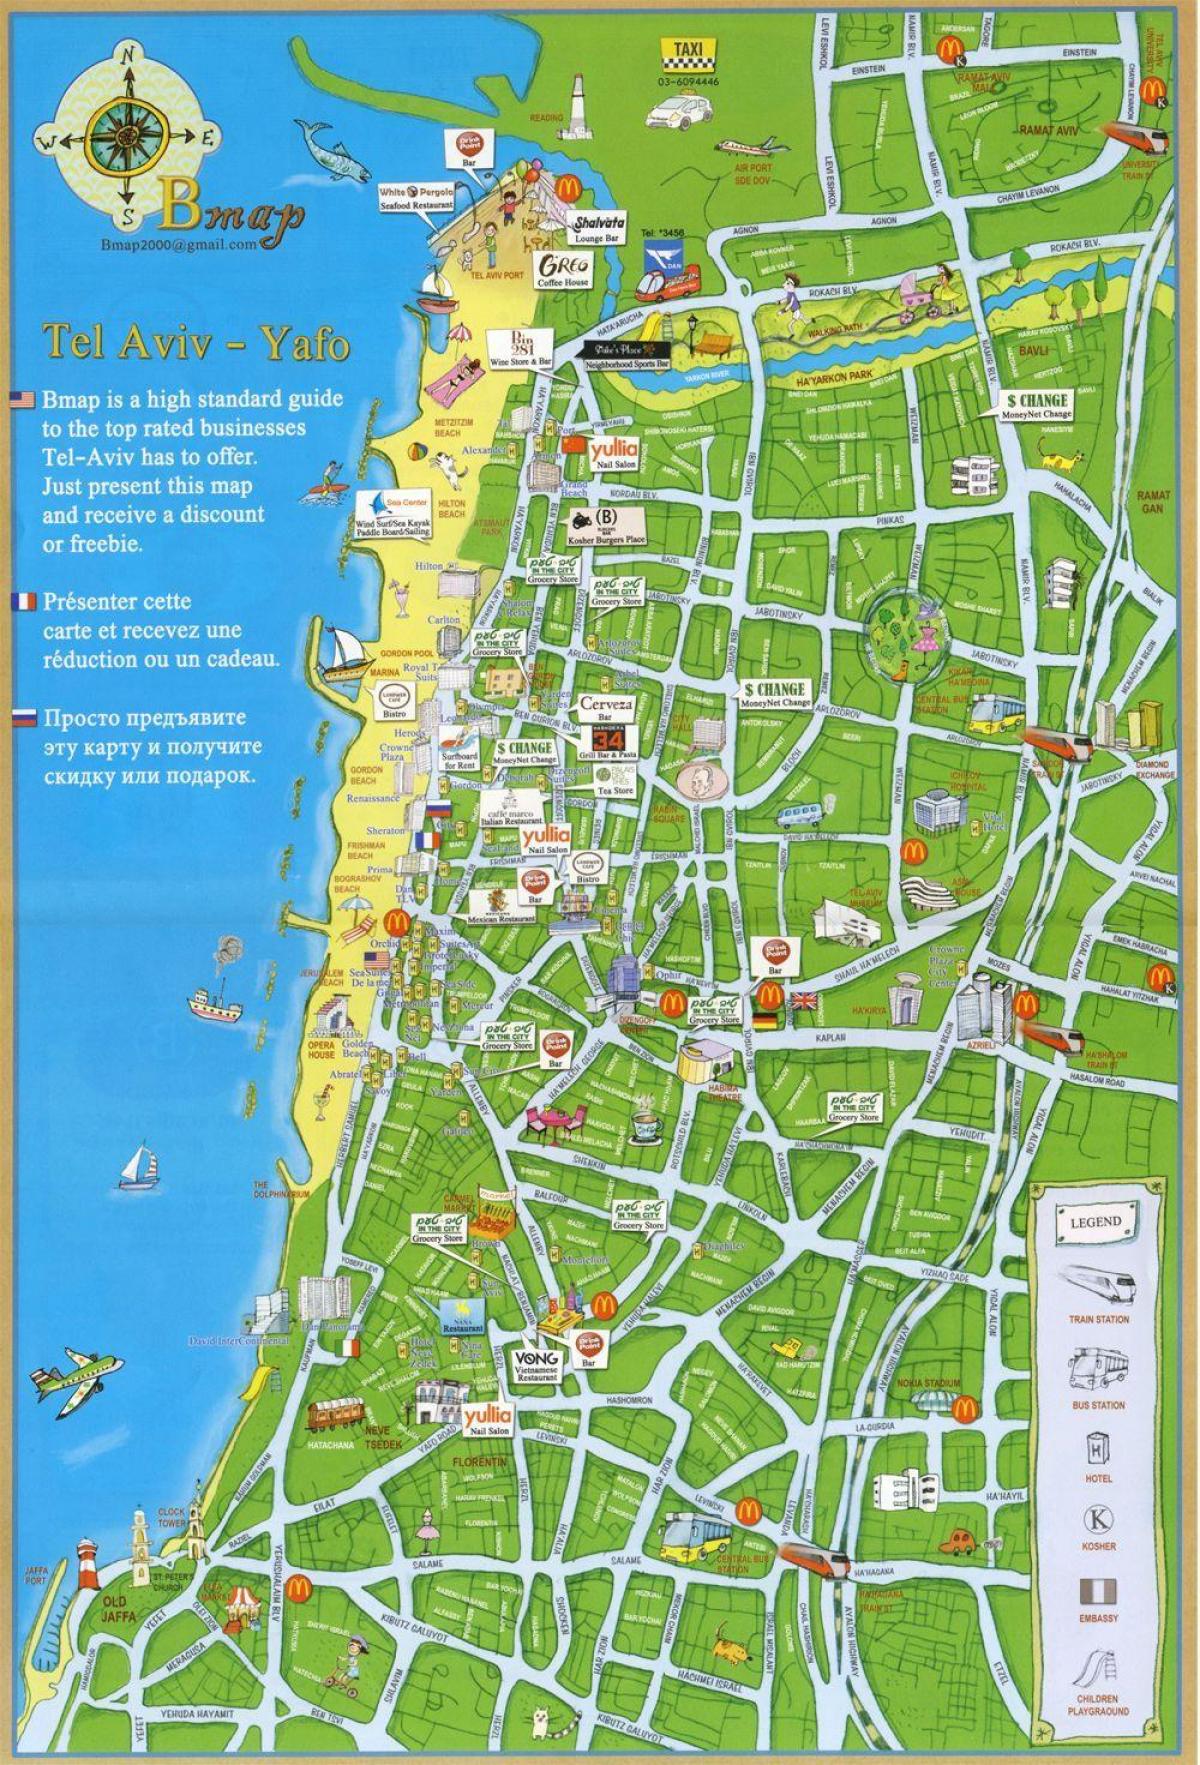 Tel Avivin nähtävyydet kartta